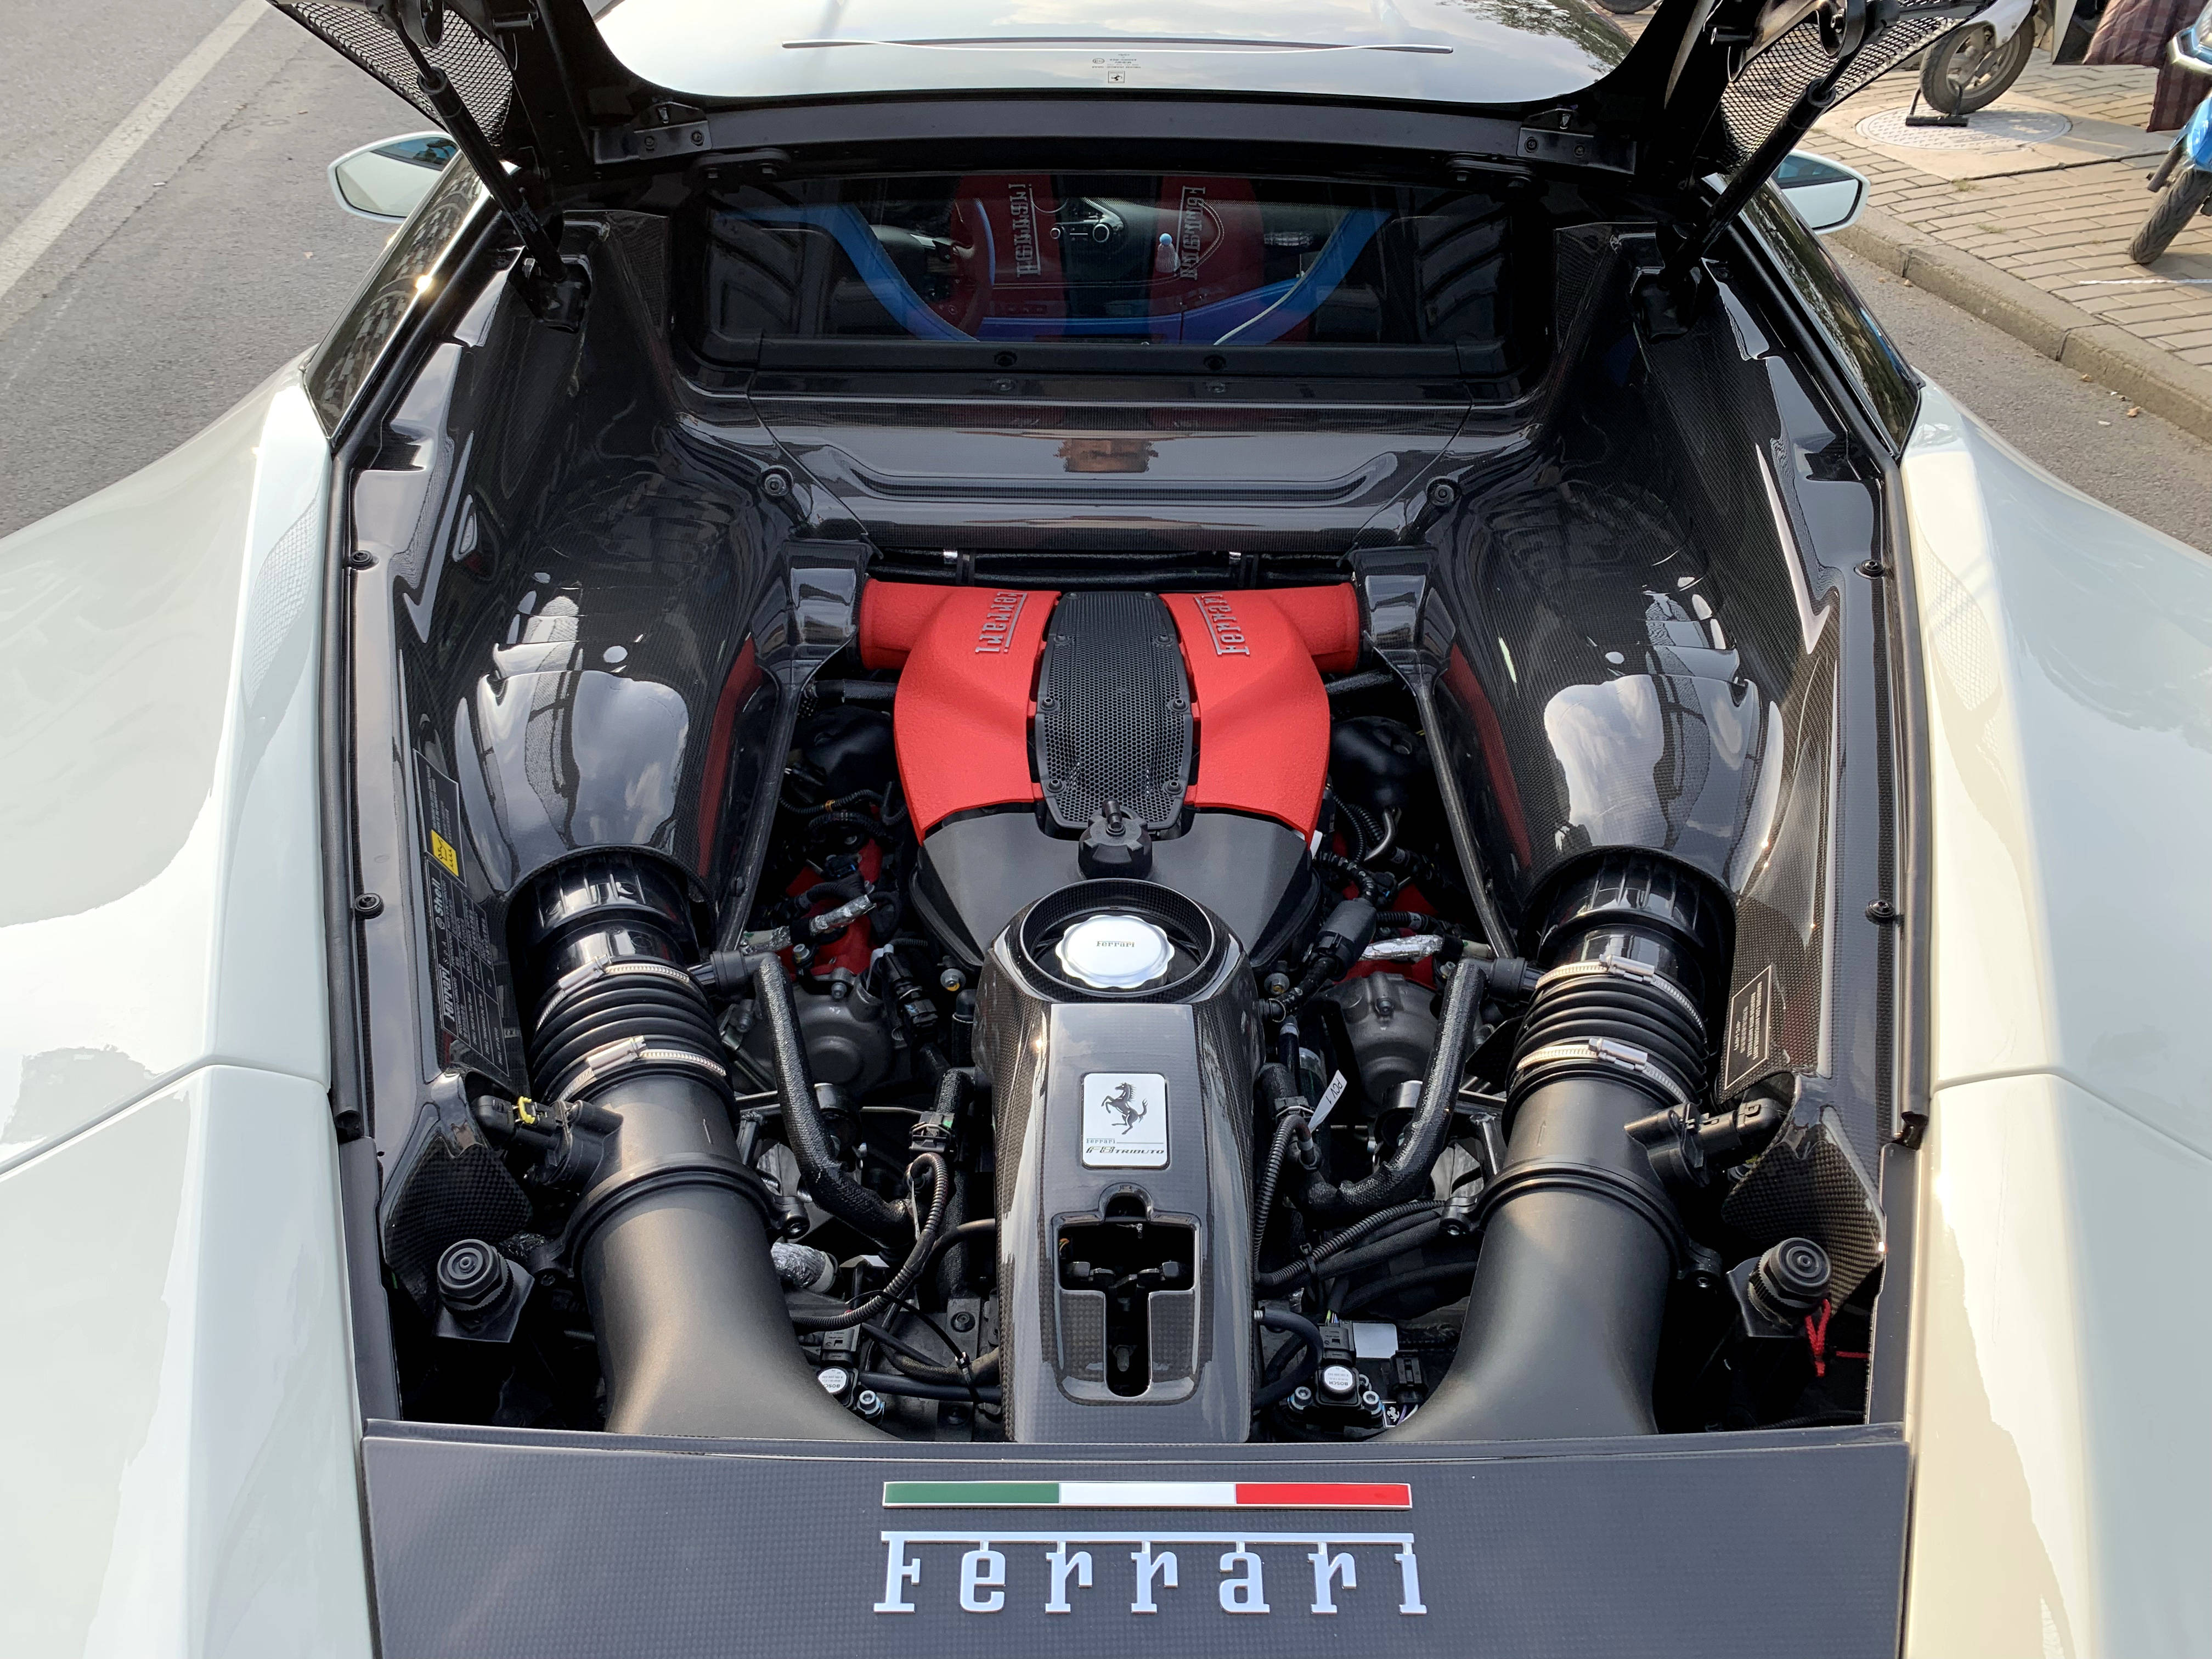 法拉利f8的发动机源自488 pista,曾被法拉利誉为近20年最好的v8发动机